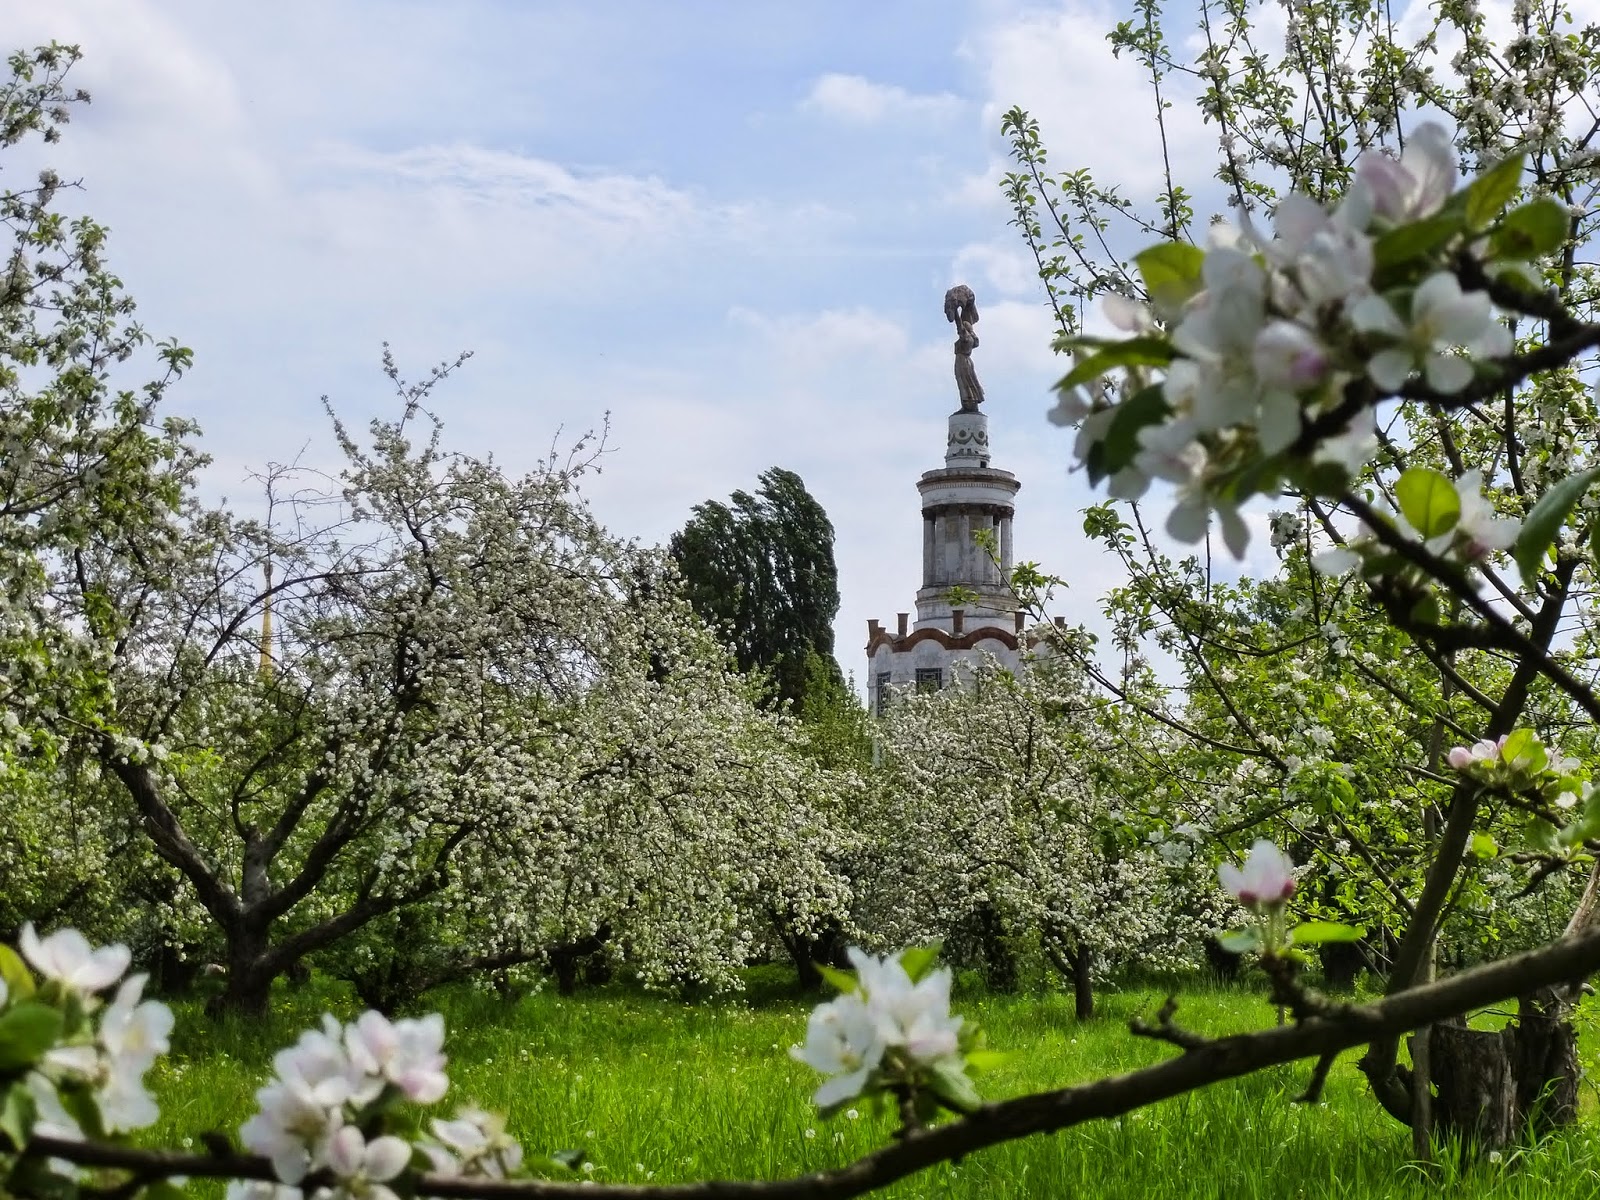 Kyiv Streets: А яблони цветут ...